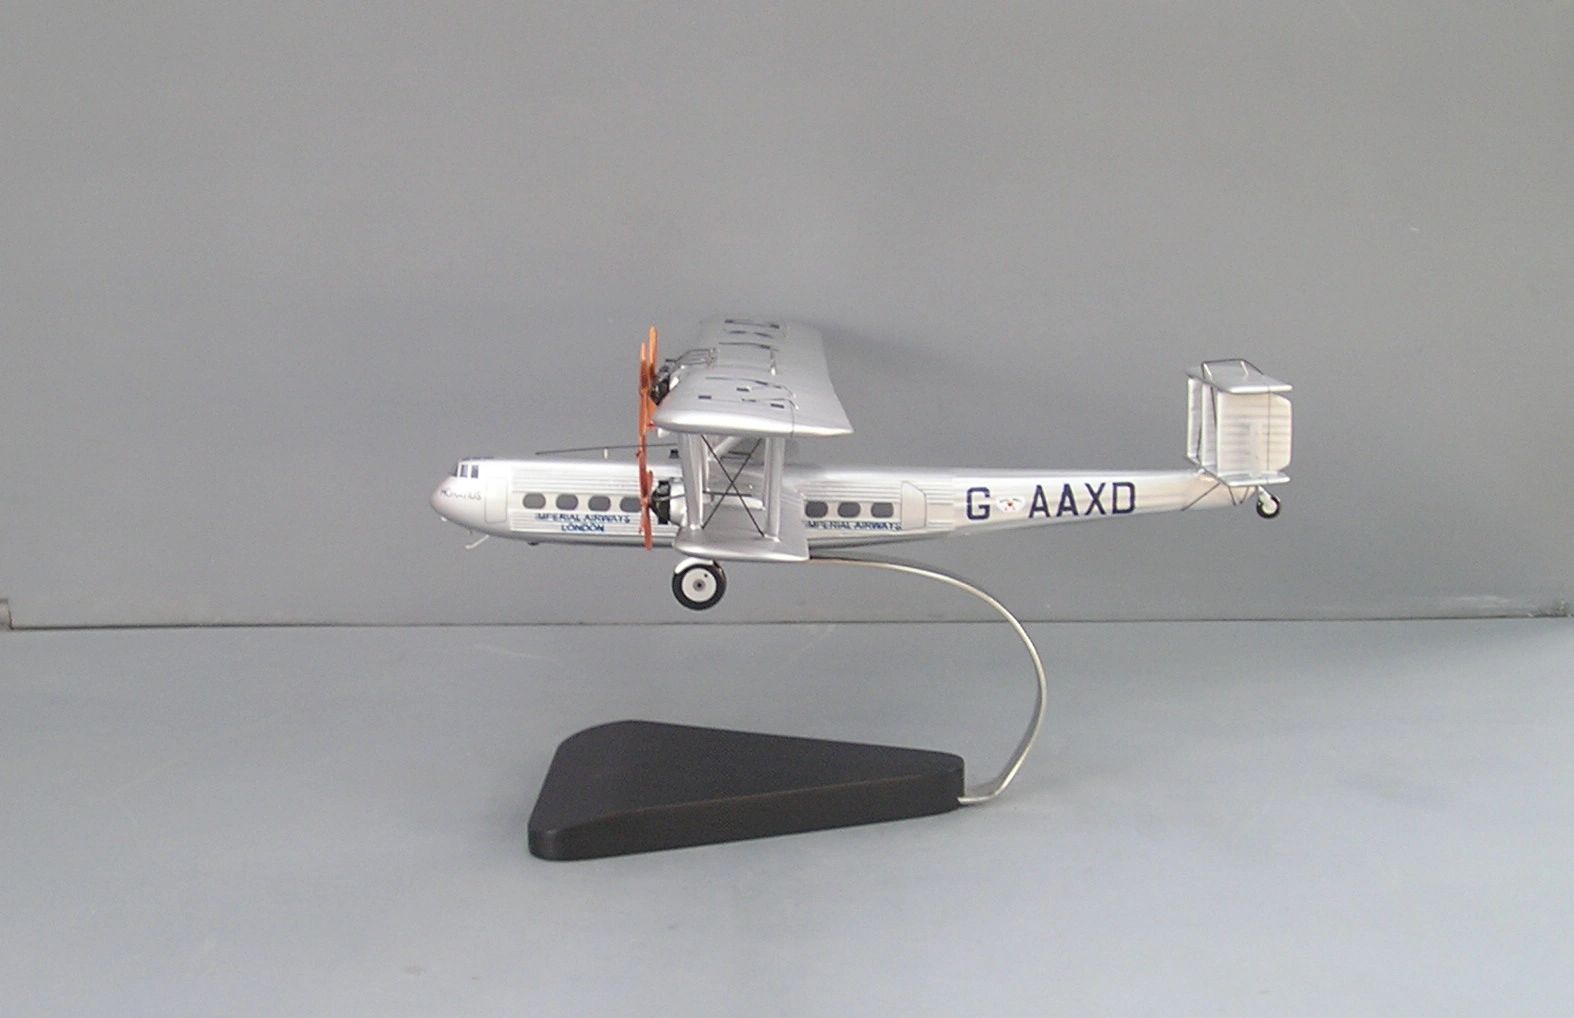 Imperial Airways desktop models